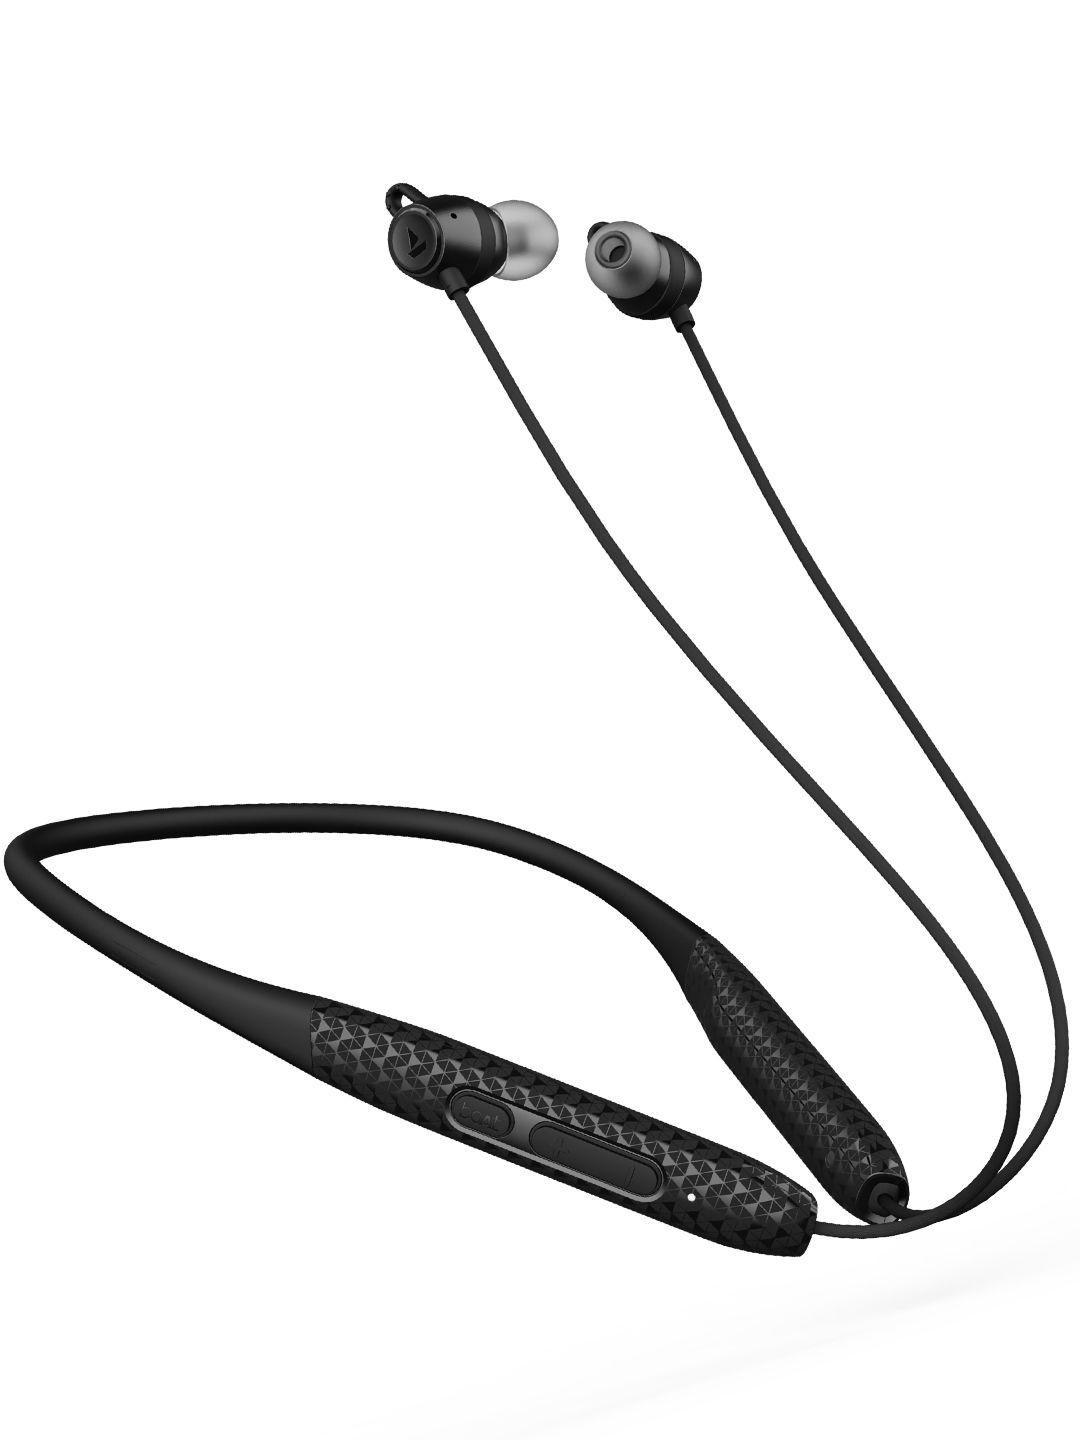 boat-rockerz-255-max-m-wireless-earphones